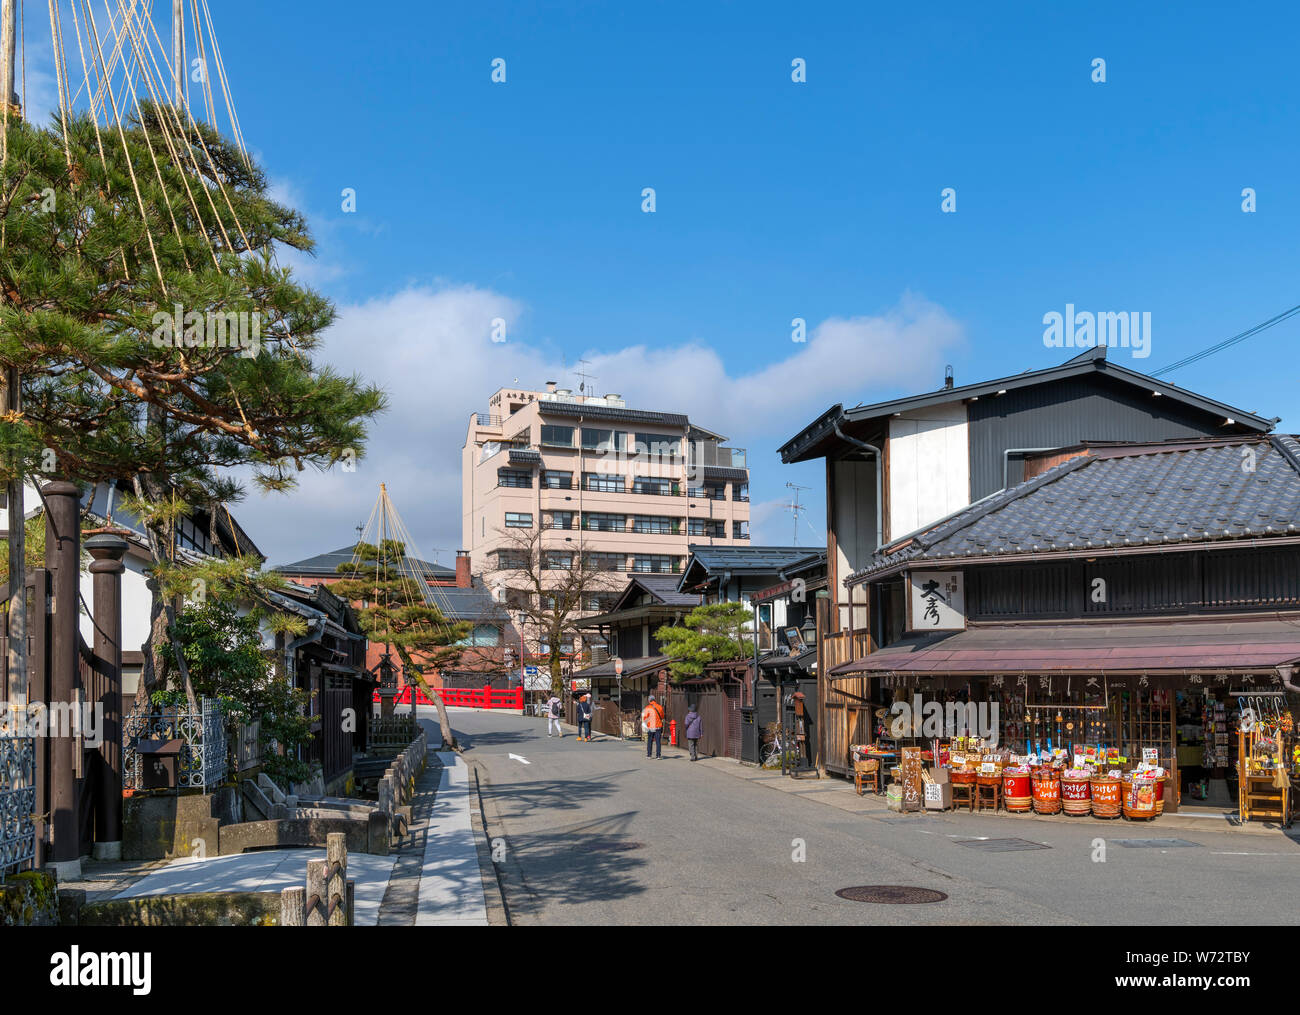 Geschäfte und traditionelle japanische Bauten auf Shinmeimachi, eine Straße in der historischen Altstadt Sanmachi-suji Bezirk, Takayama, Präfektur Gifu, Honshu, Japan Stockfoto